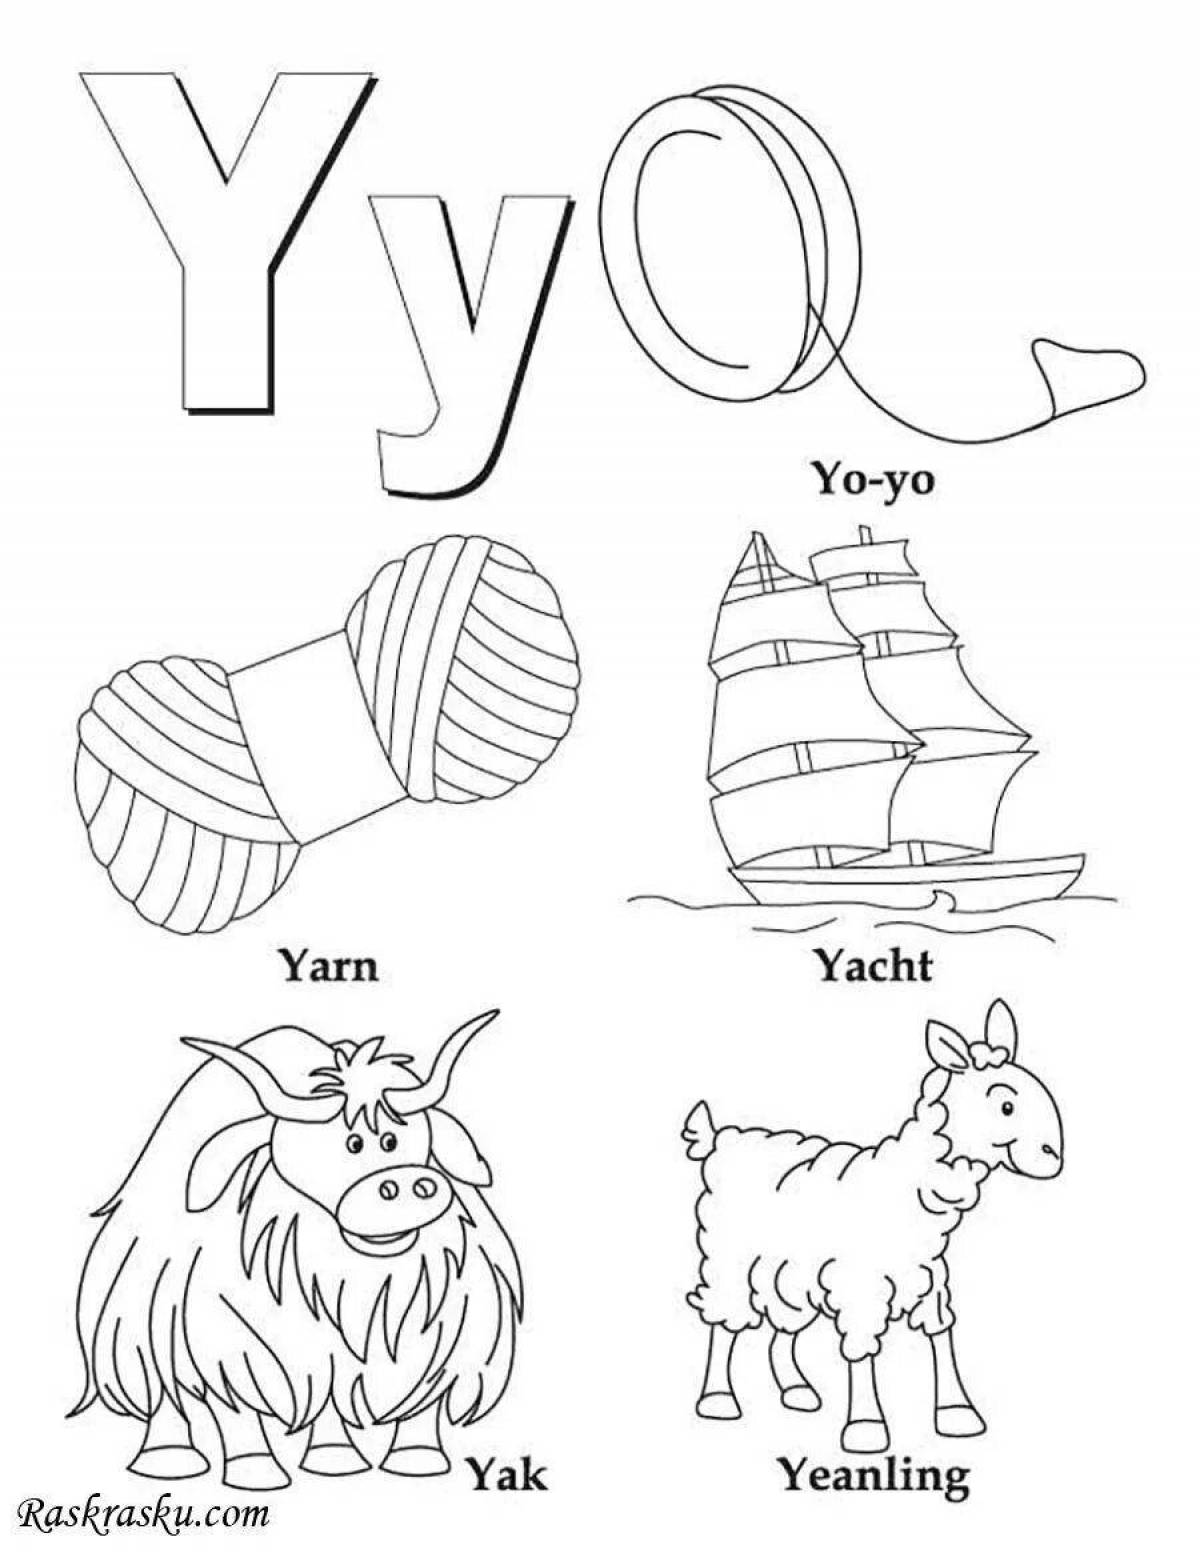 Развлекательная раскраска английских букв для детей